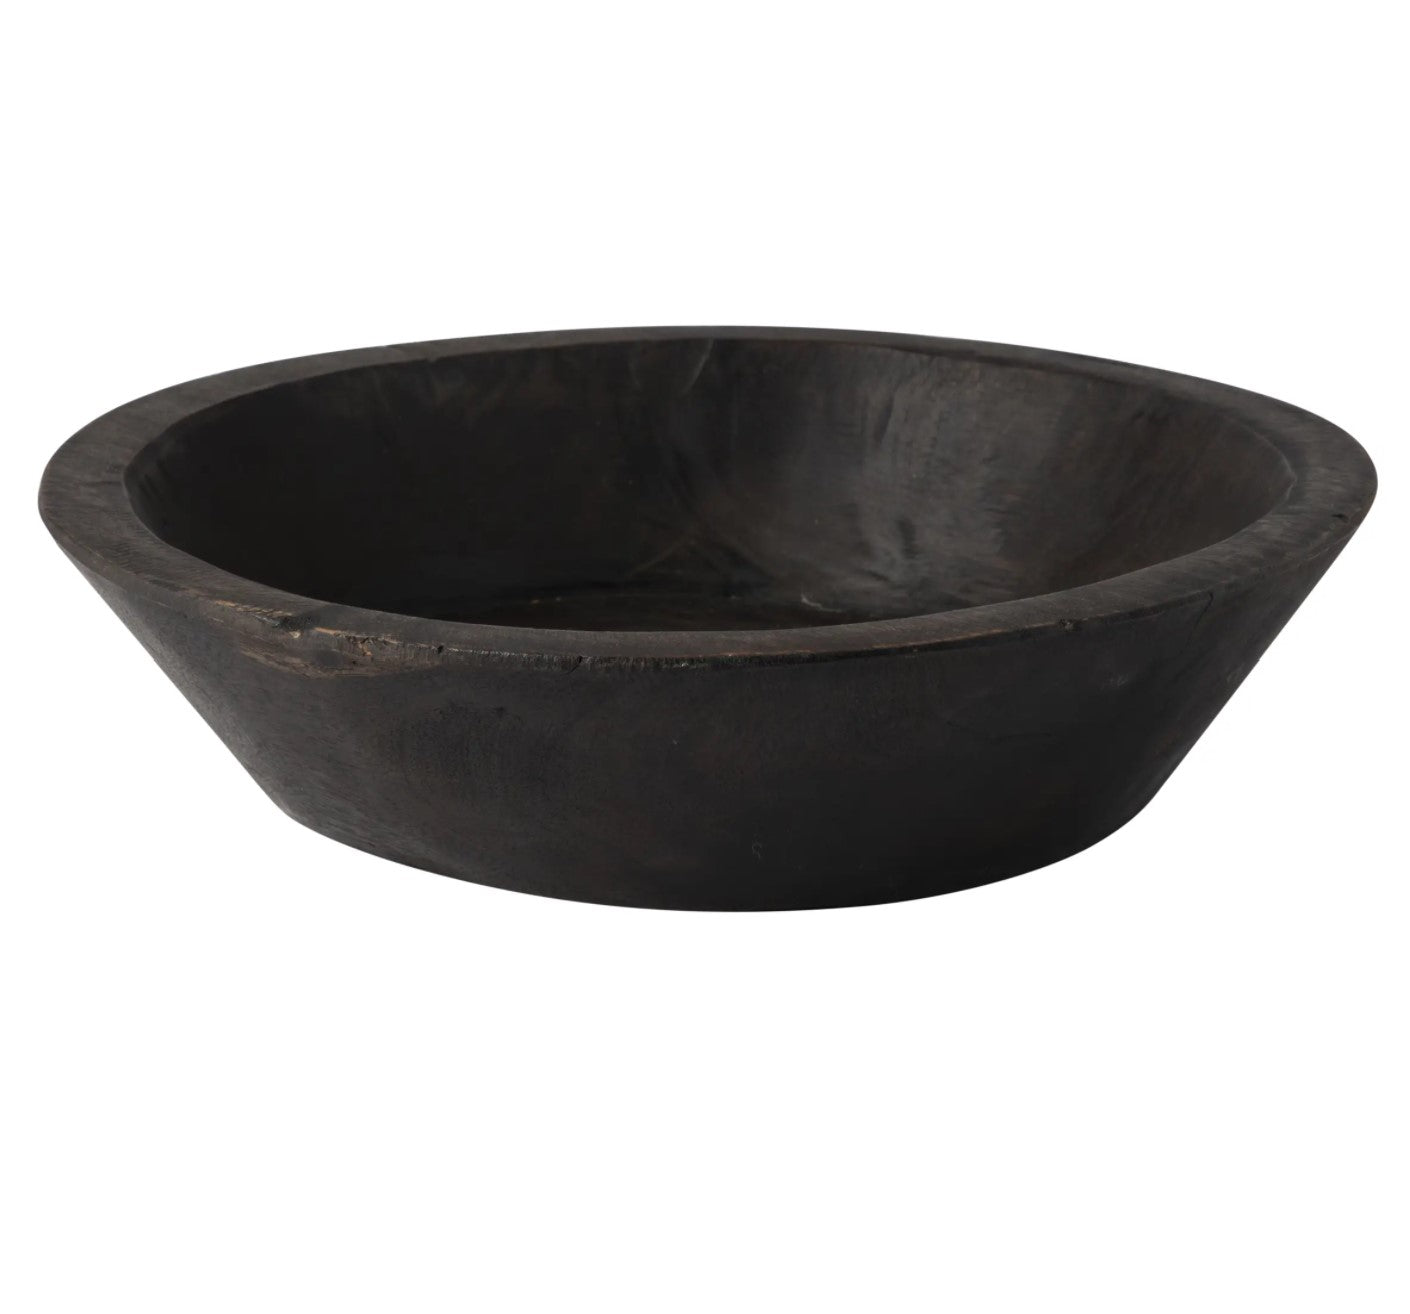 Found Dough Bowl | Dark Wash